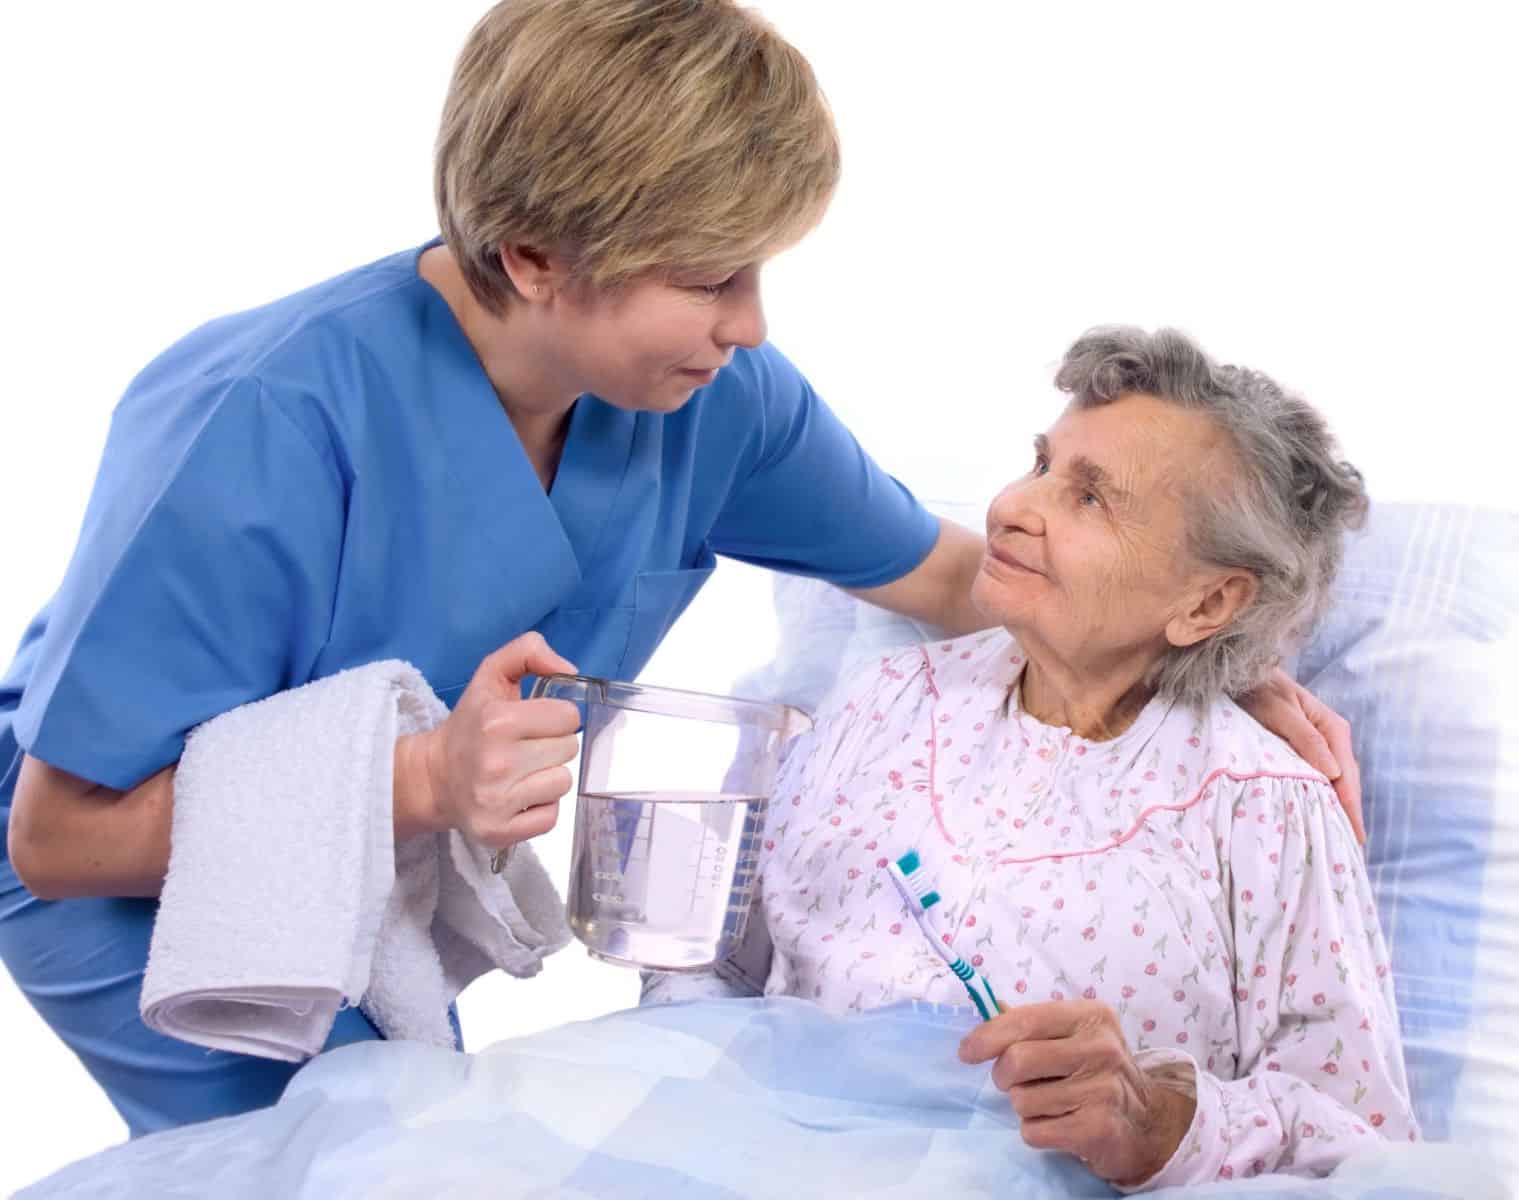 Gợi ý những cách chăm sóc người già bị lẫn | Dịch vụ chăm sóc người già